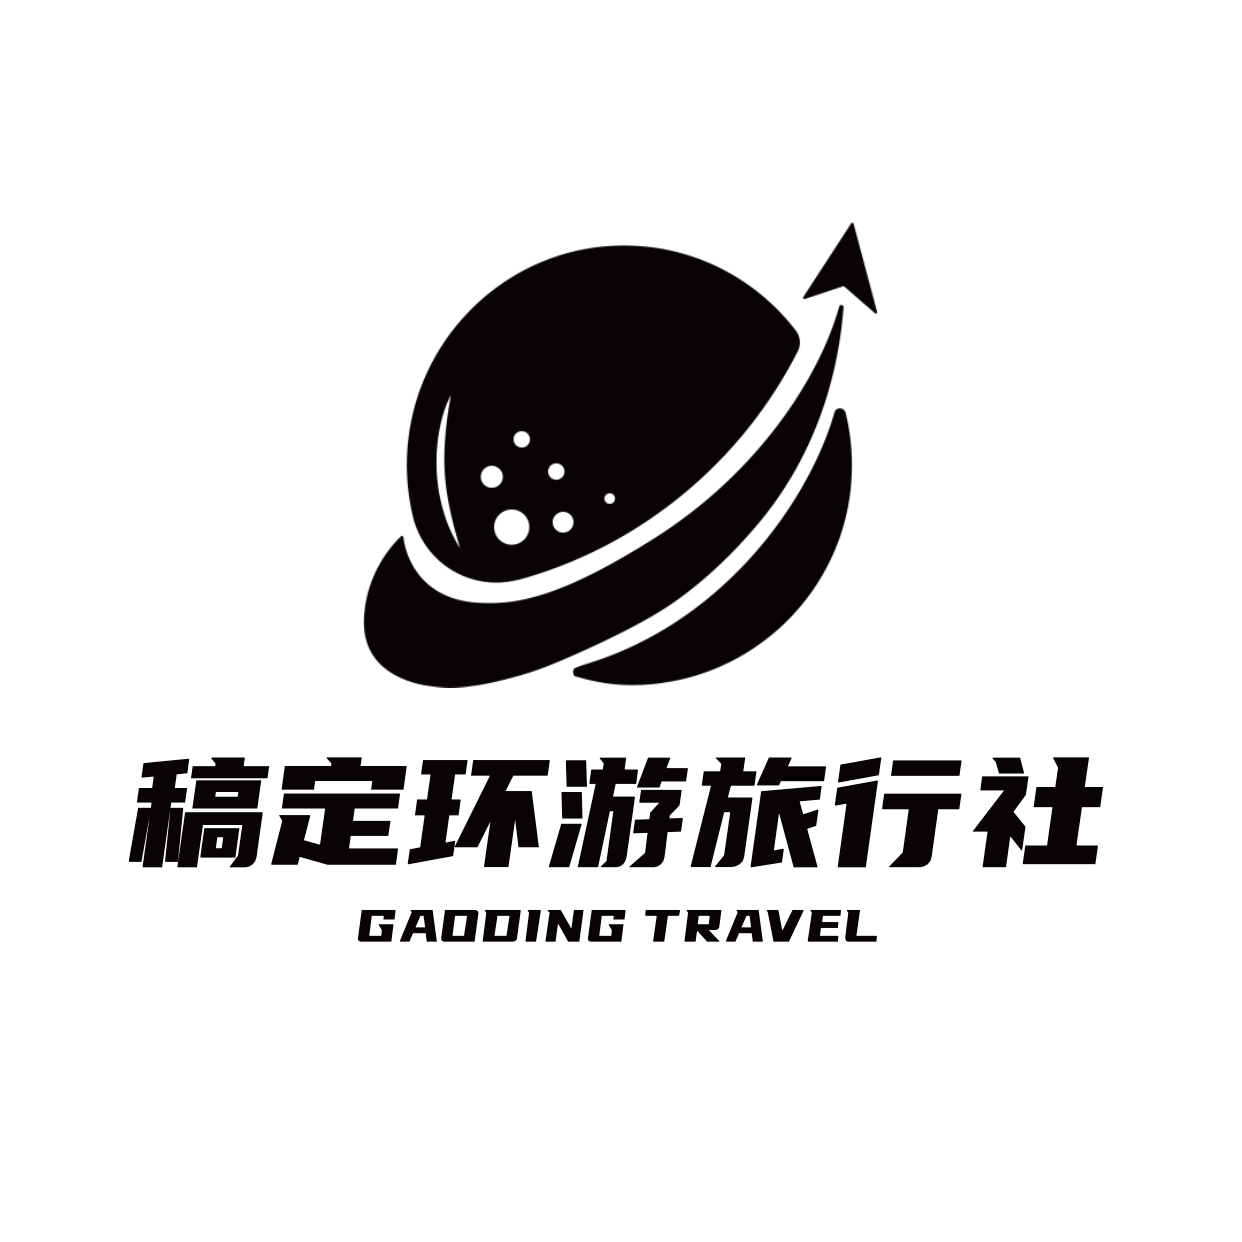 旅游出行品牌宣传创意logo头像